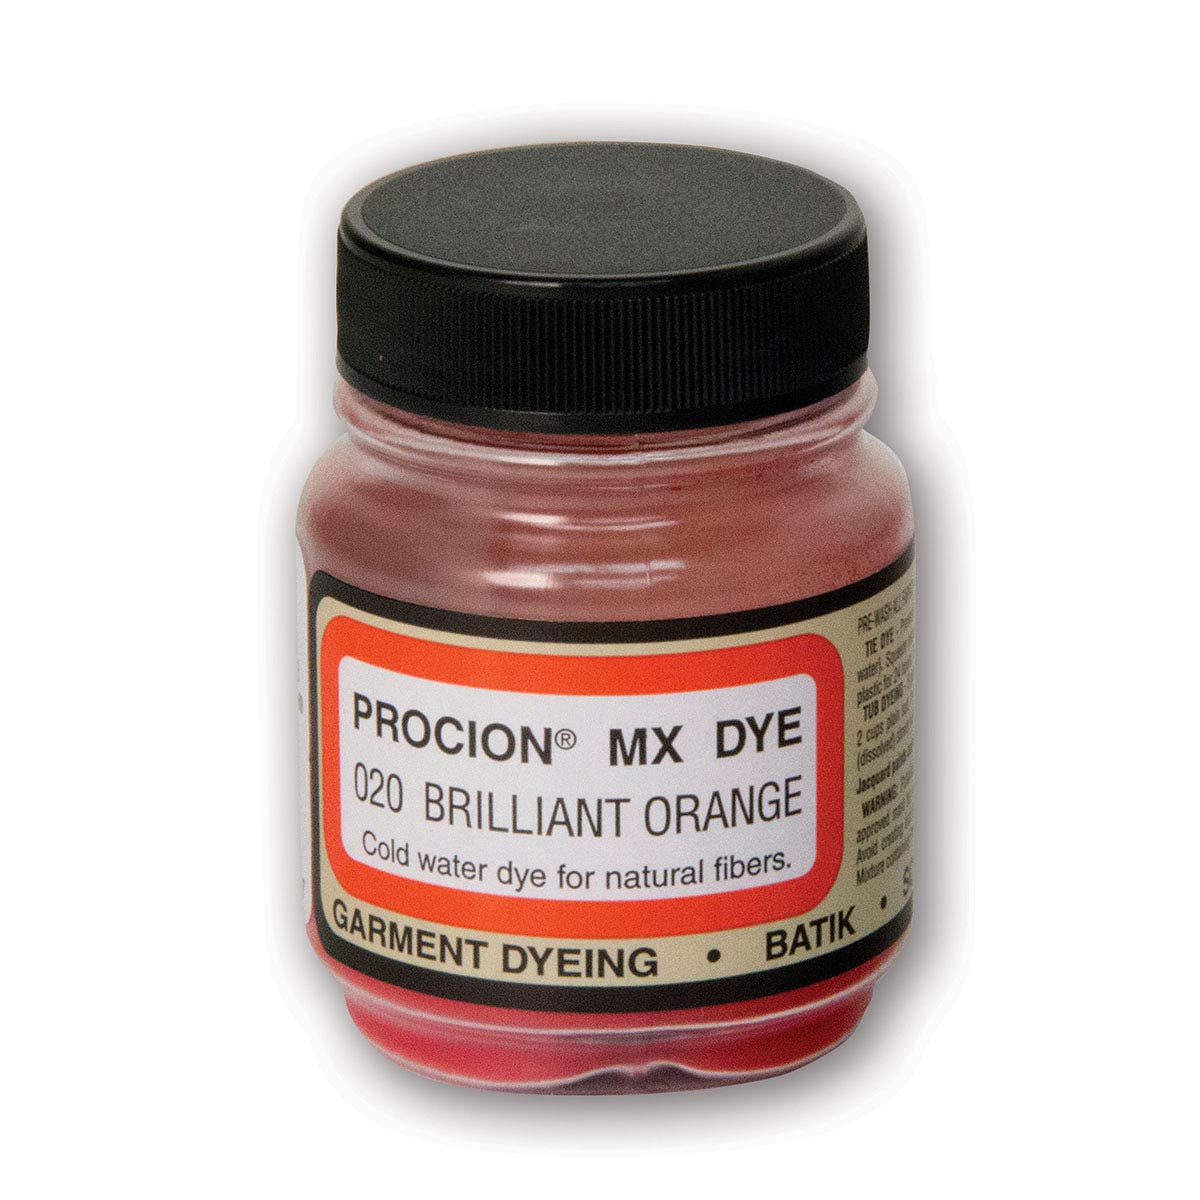 Jacquard - Procion MX Dye - Tissu Textile - Orange Vif 020